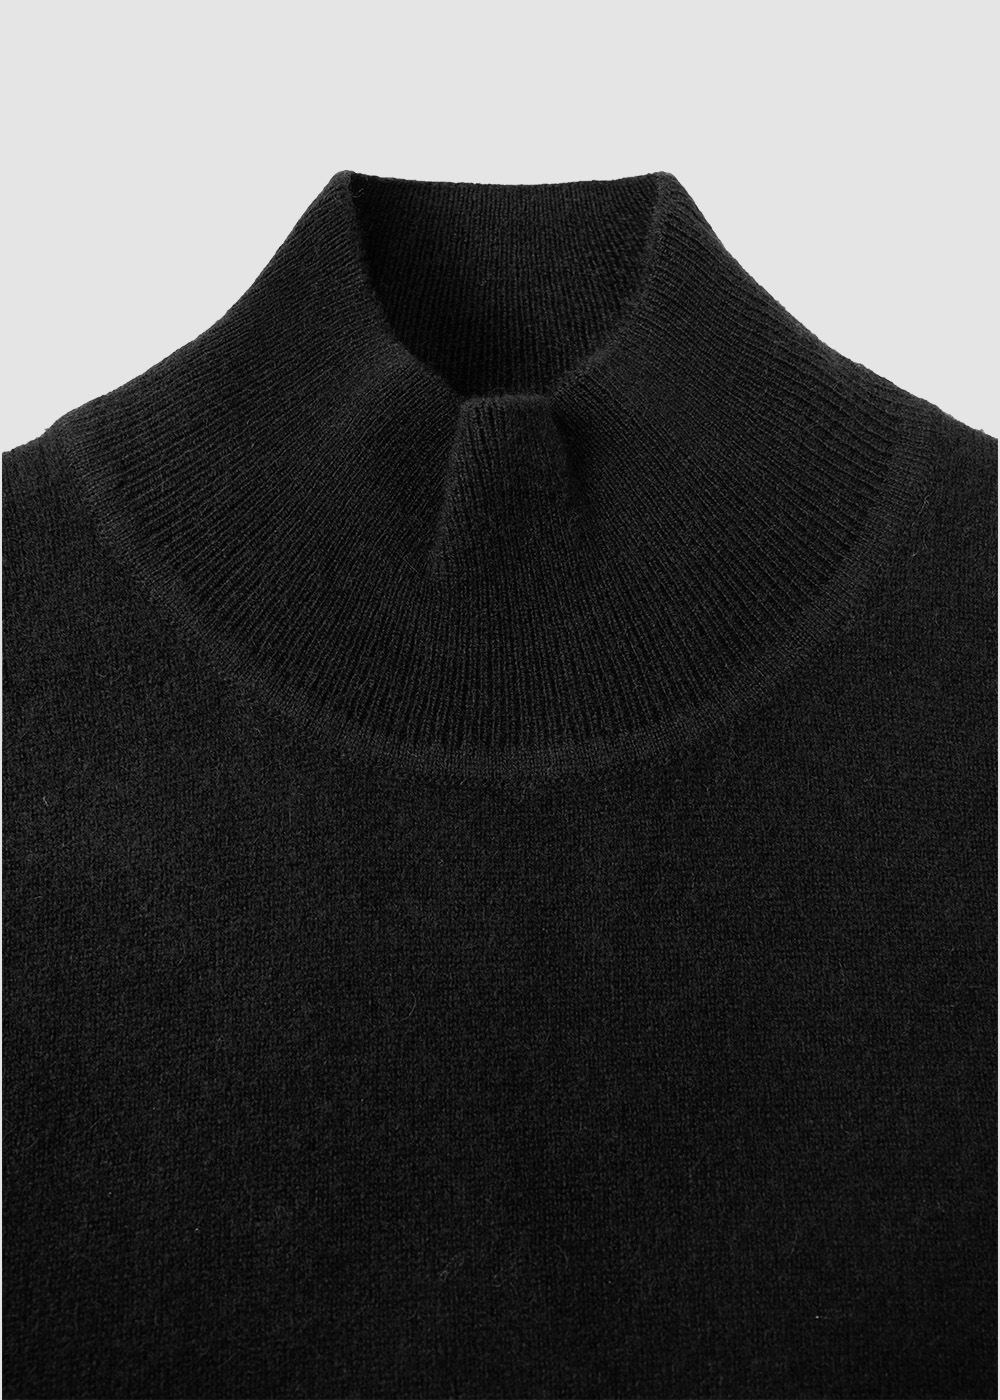 Cashmere 10% Blended Mockneck Knit _ black